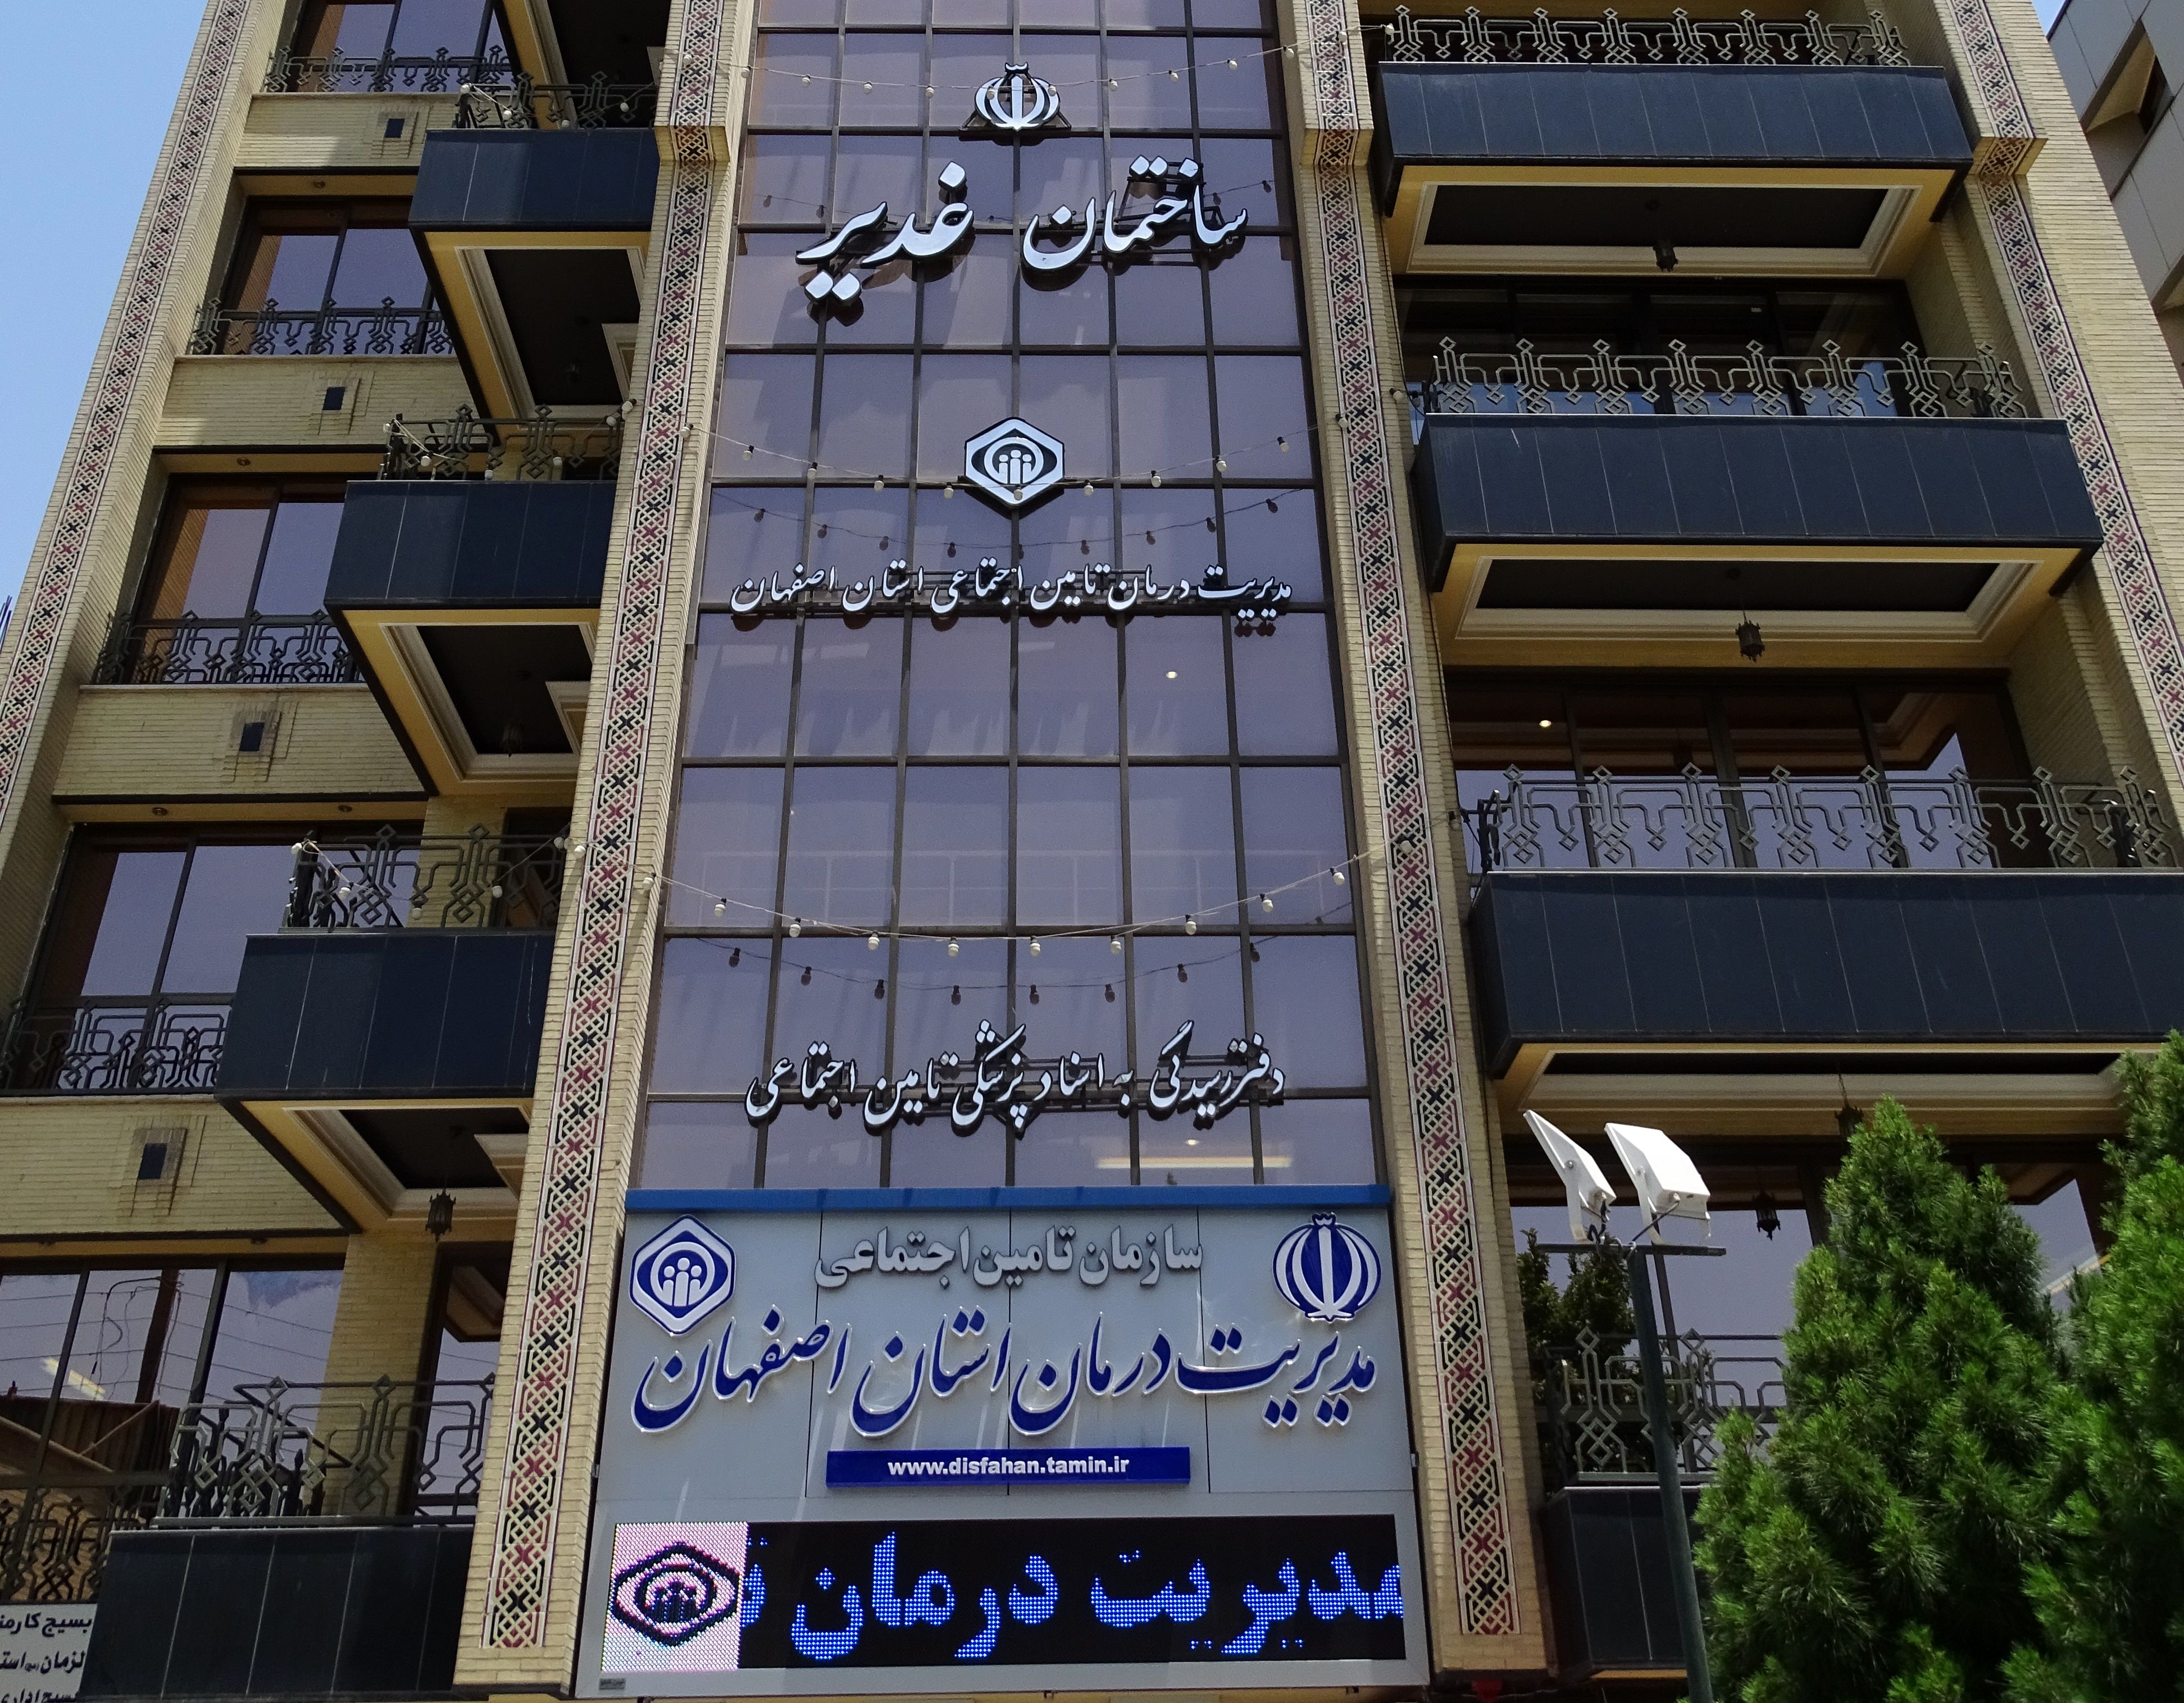 اولین همایش و نمایشگاه پژوهش محور توسعه سلامت و رفاه اجتماعی در اصفهان برگزار می شود